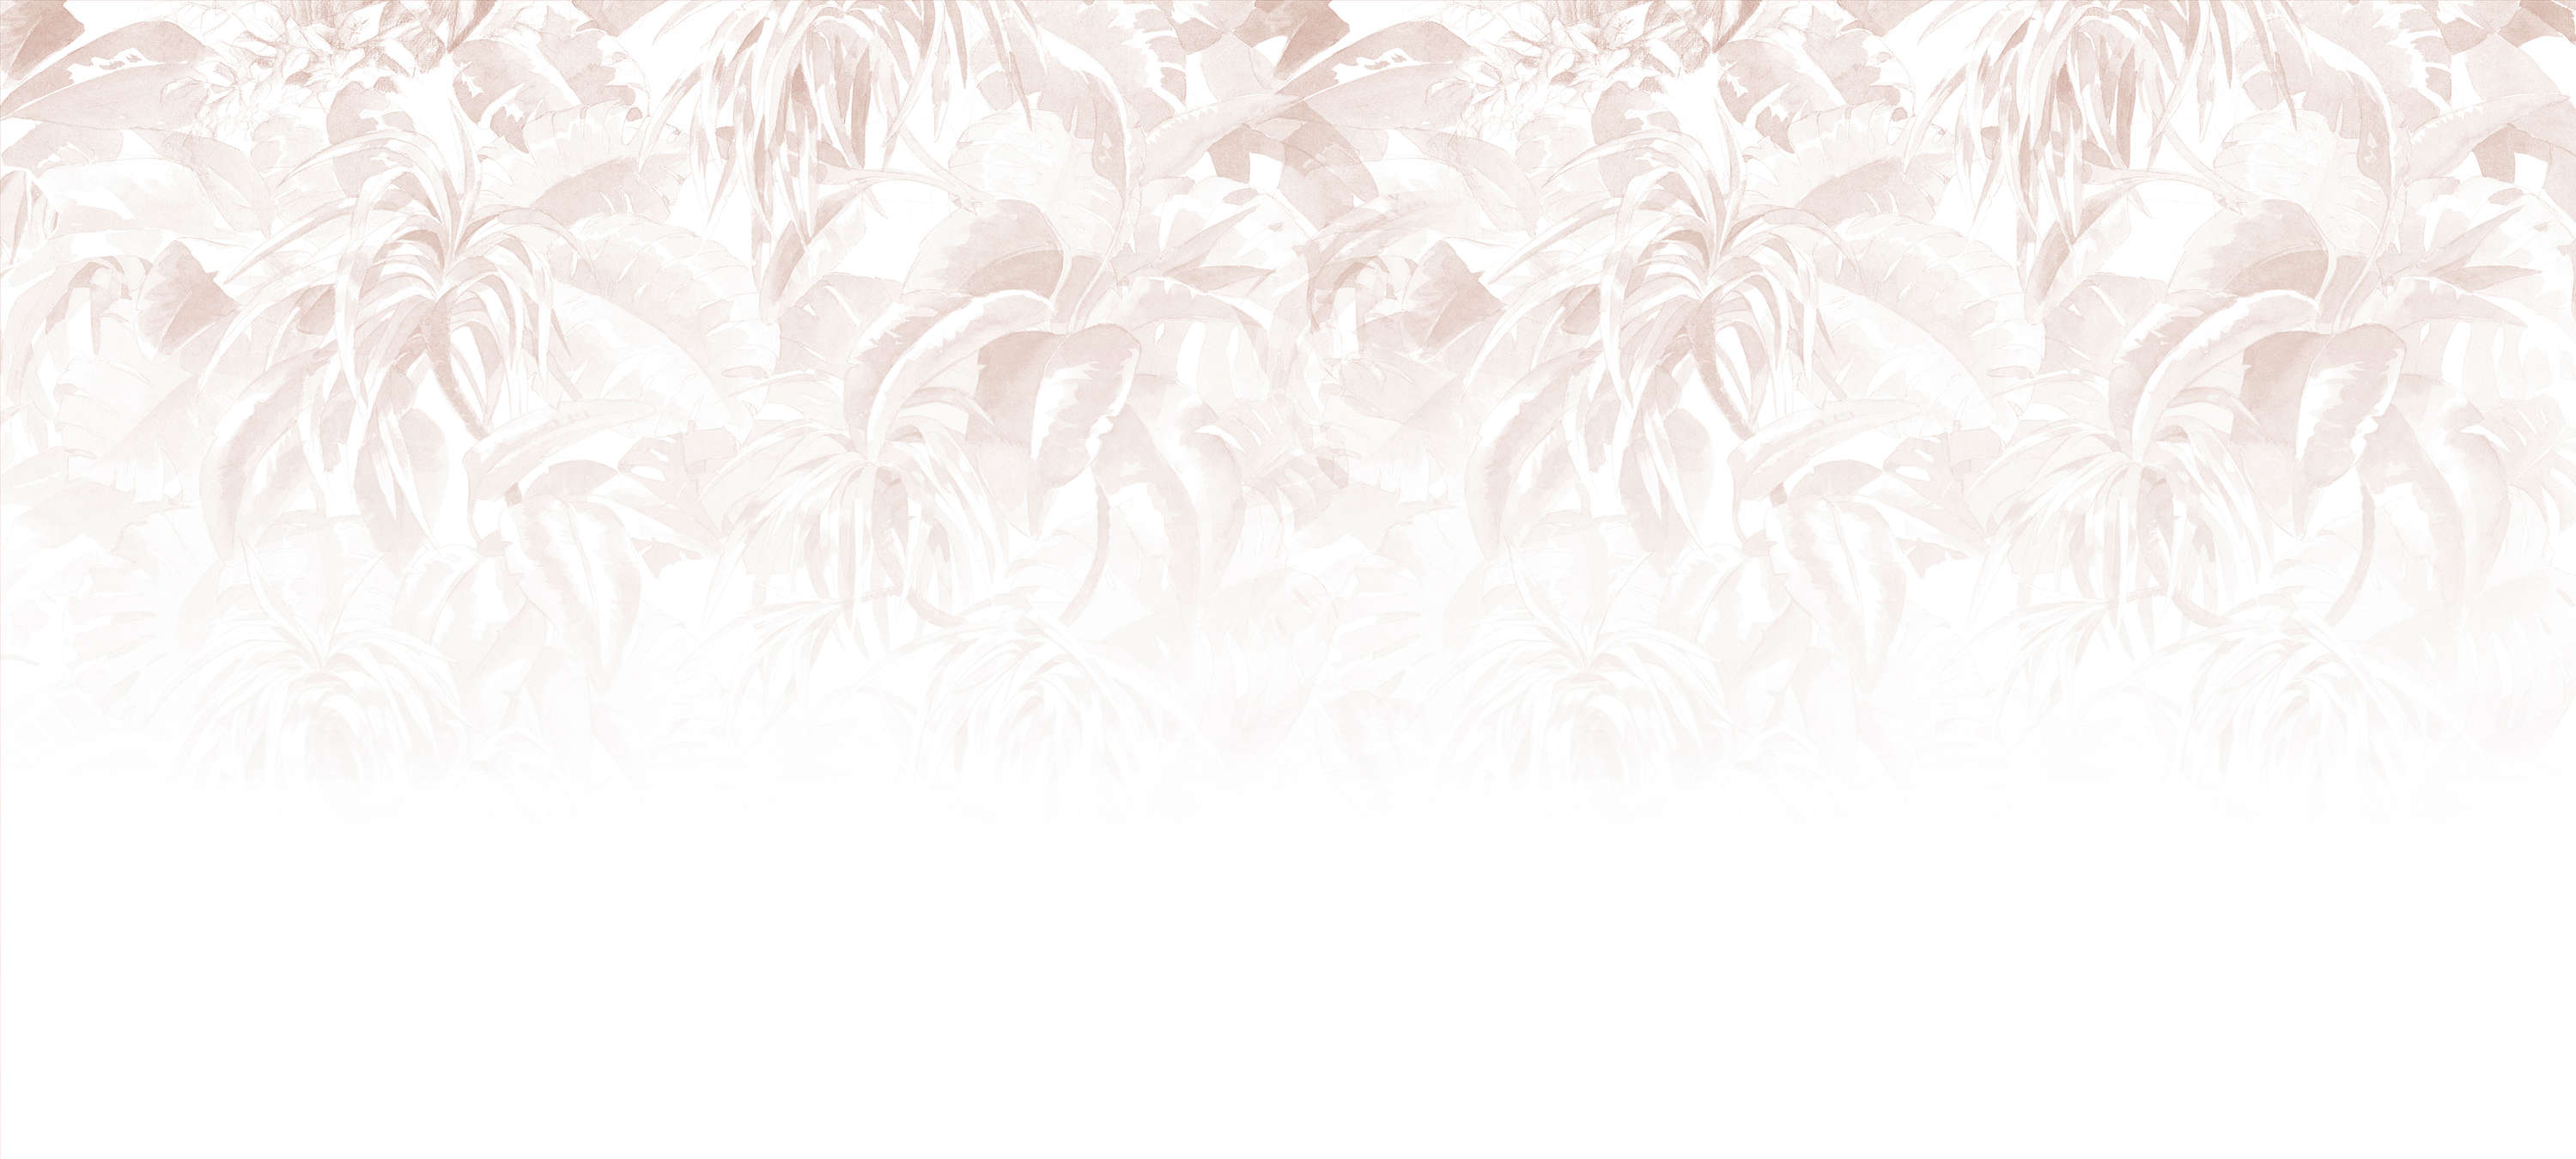             Fototapete mit Blättermuster, feminin & minimalistisch – Rosa, Weiß, Grau
        